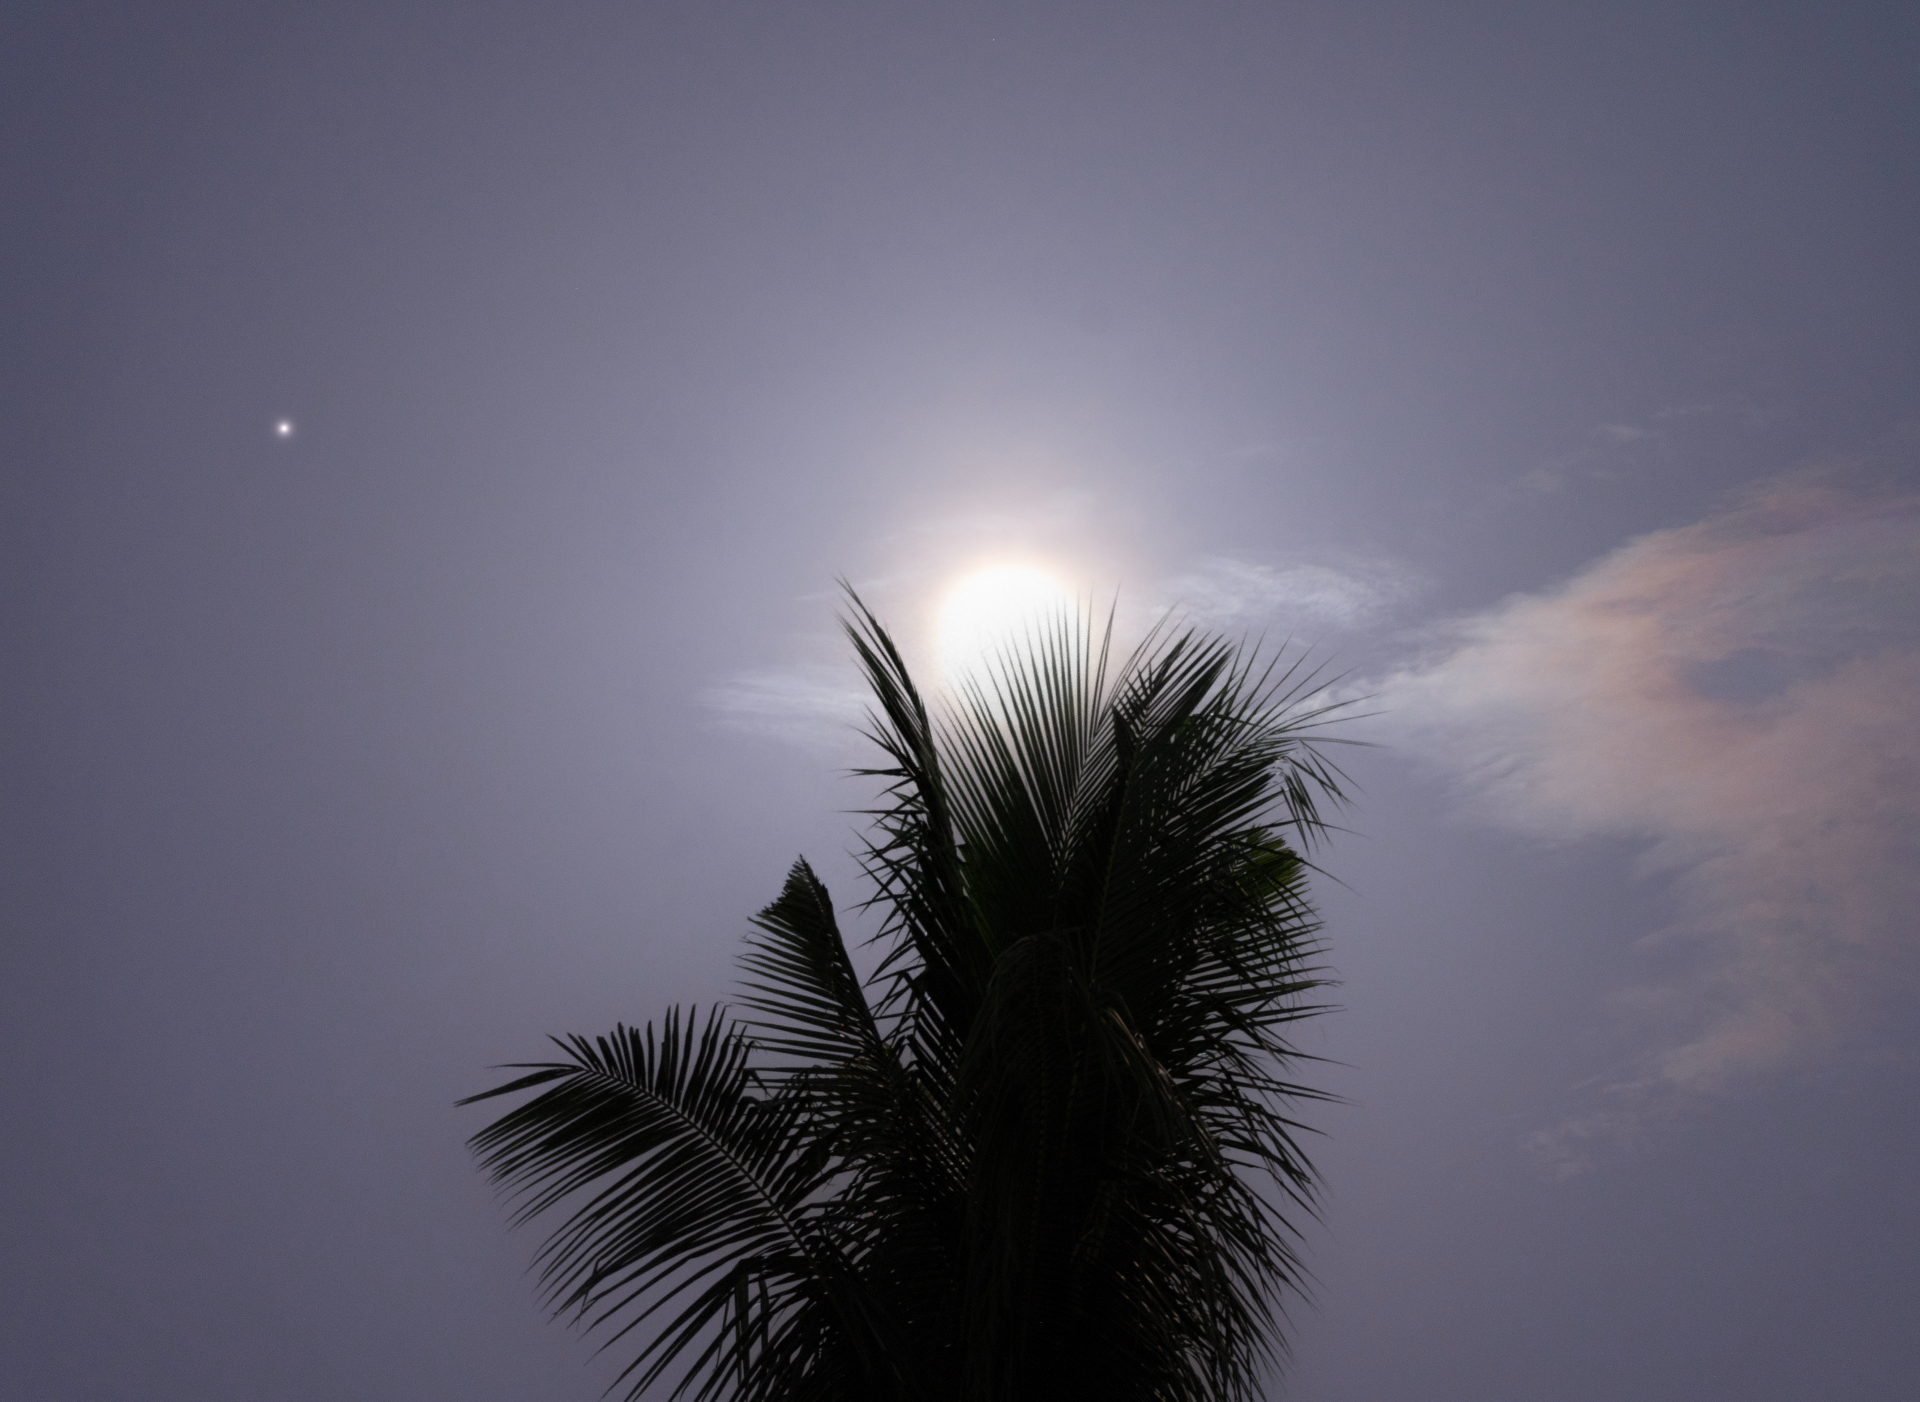 Der riesige blaue Mond scheint hell hinter einer Palme, wobei links vom Mond der kleine Punkt des Saturn sichtbar ist.